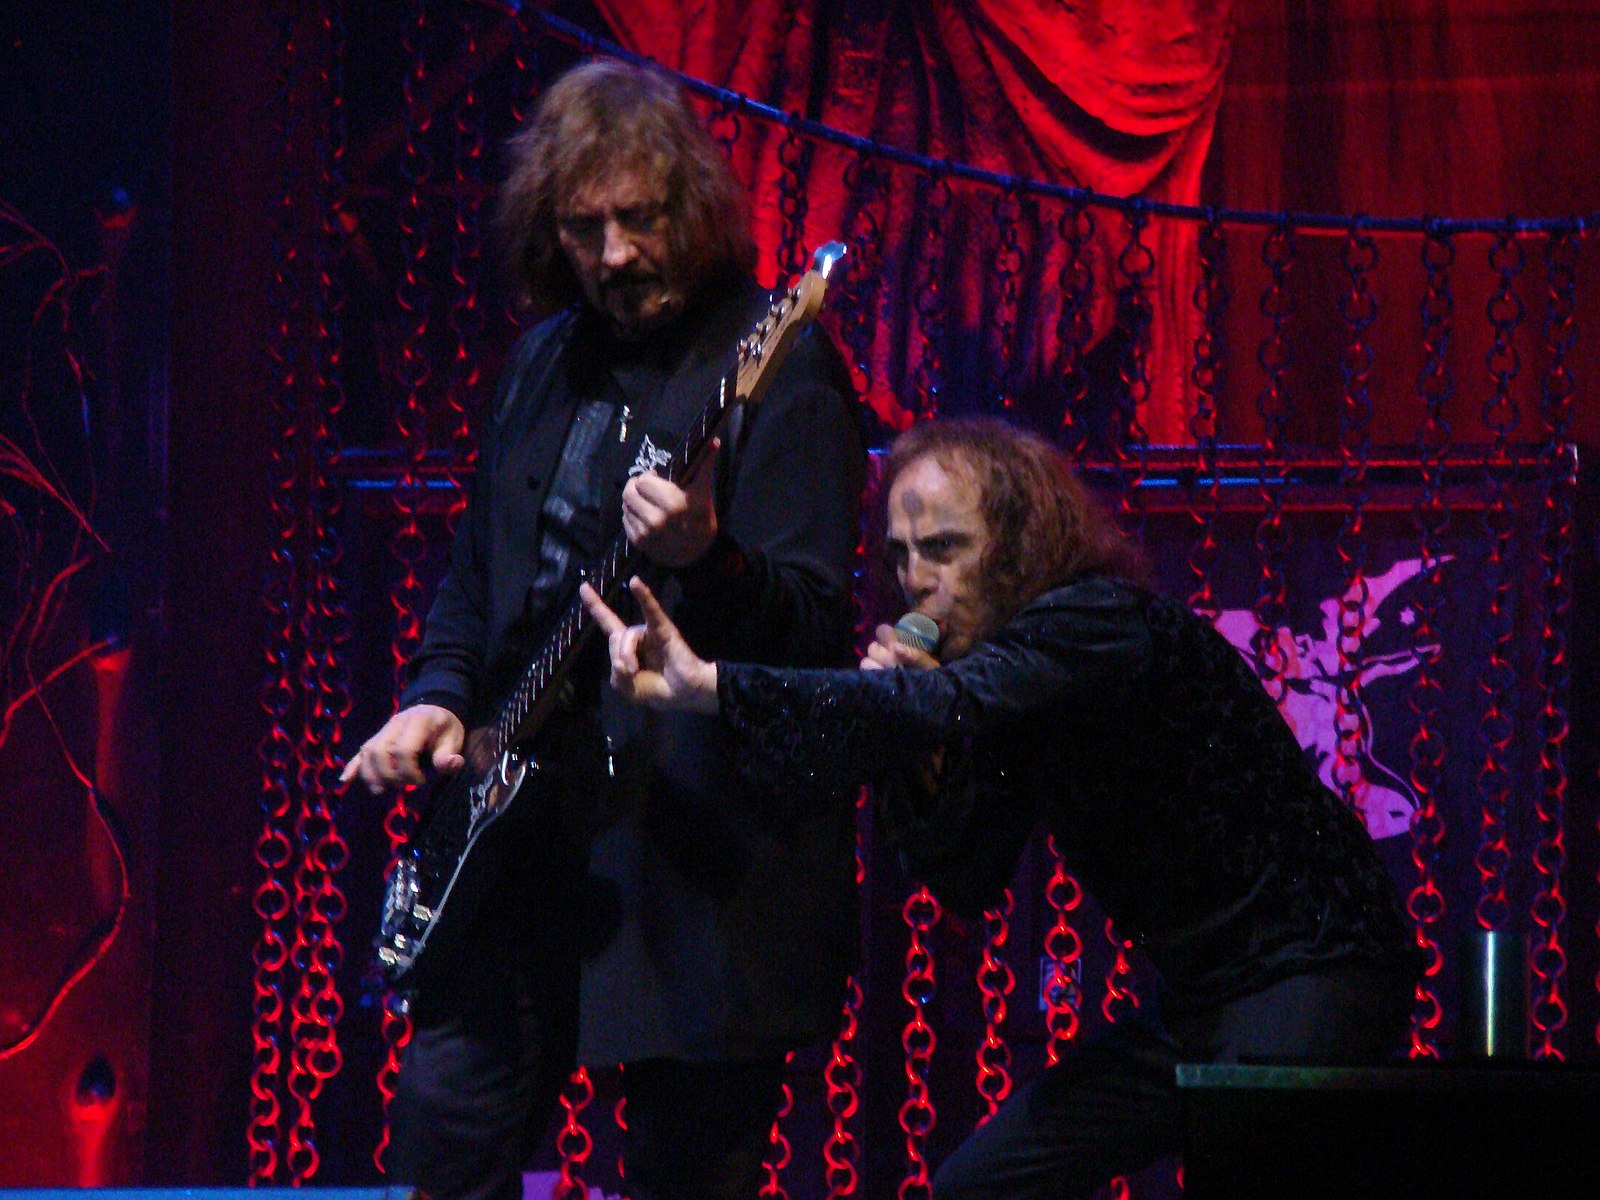 L'ancien batteur de Black Sabbath s'ouvre sur Ronnie James Dio en utilisant des pistes d'accompagnement vocales, révèle la chanson sur laquelle ils l'ont utilisée